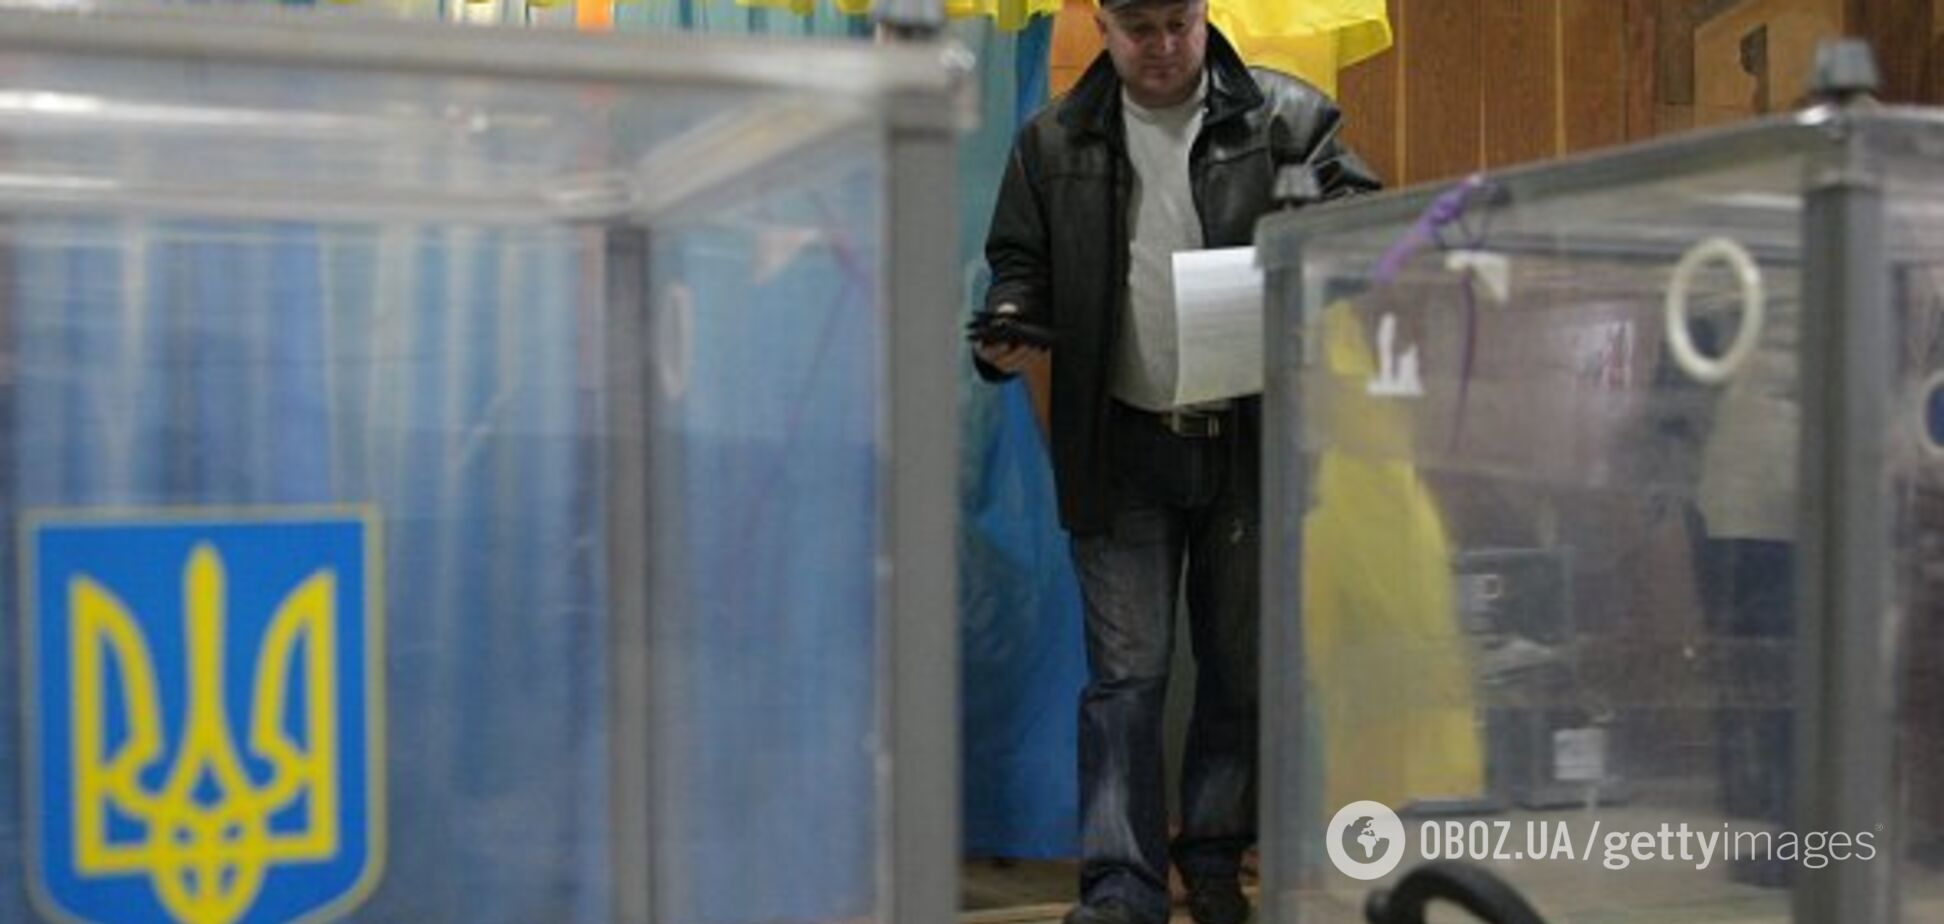 Не фальсификация: названа самая большая угроза для выборов в Украине